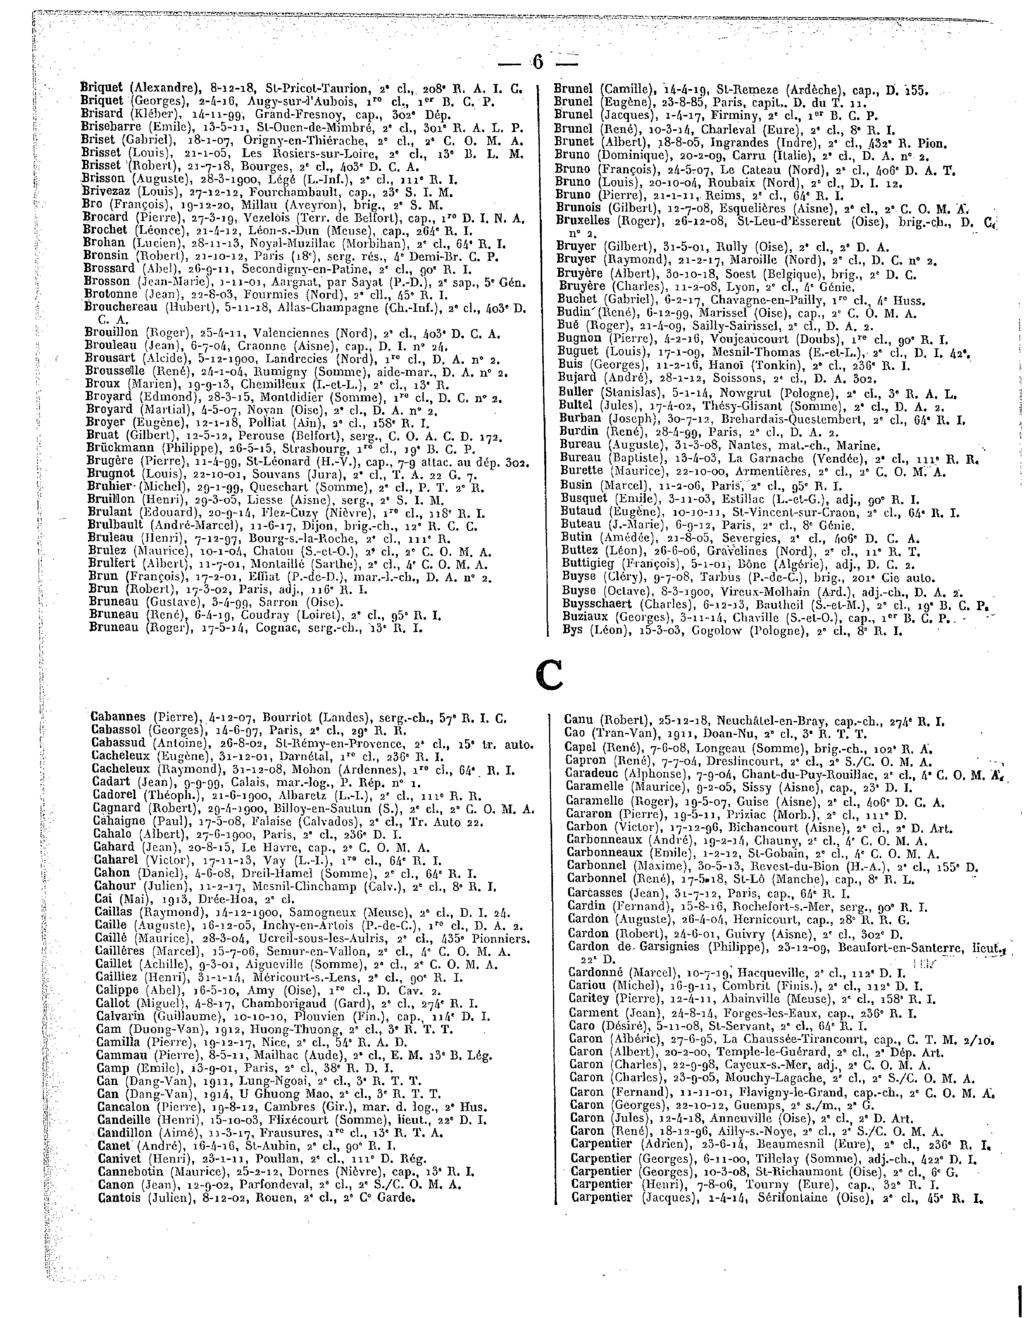 6 Briquet(Alexandre), 8-12-18,Sl-Pricot-Taurion, 2' cl., 208"R. A.I. G. Briquet(Georges), 2-4-16,Augy-sur-l'Aubois, iro cl., 1erB. C.P. Brisard(Kléber),14-11-99', Grand-FYesnoy, cap.,302"dép.